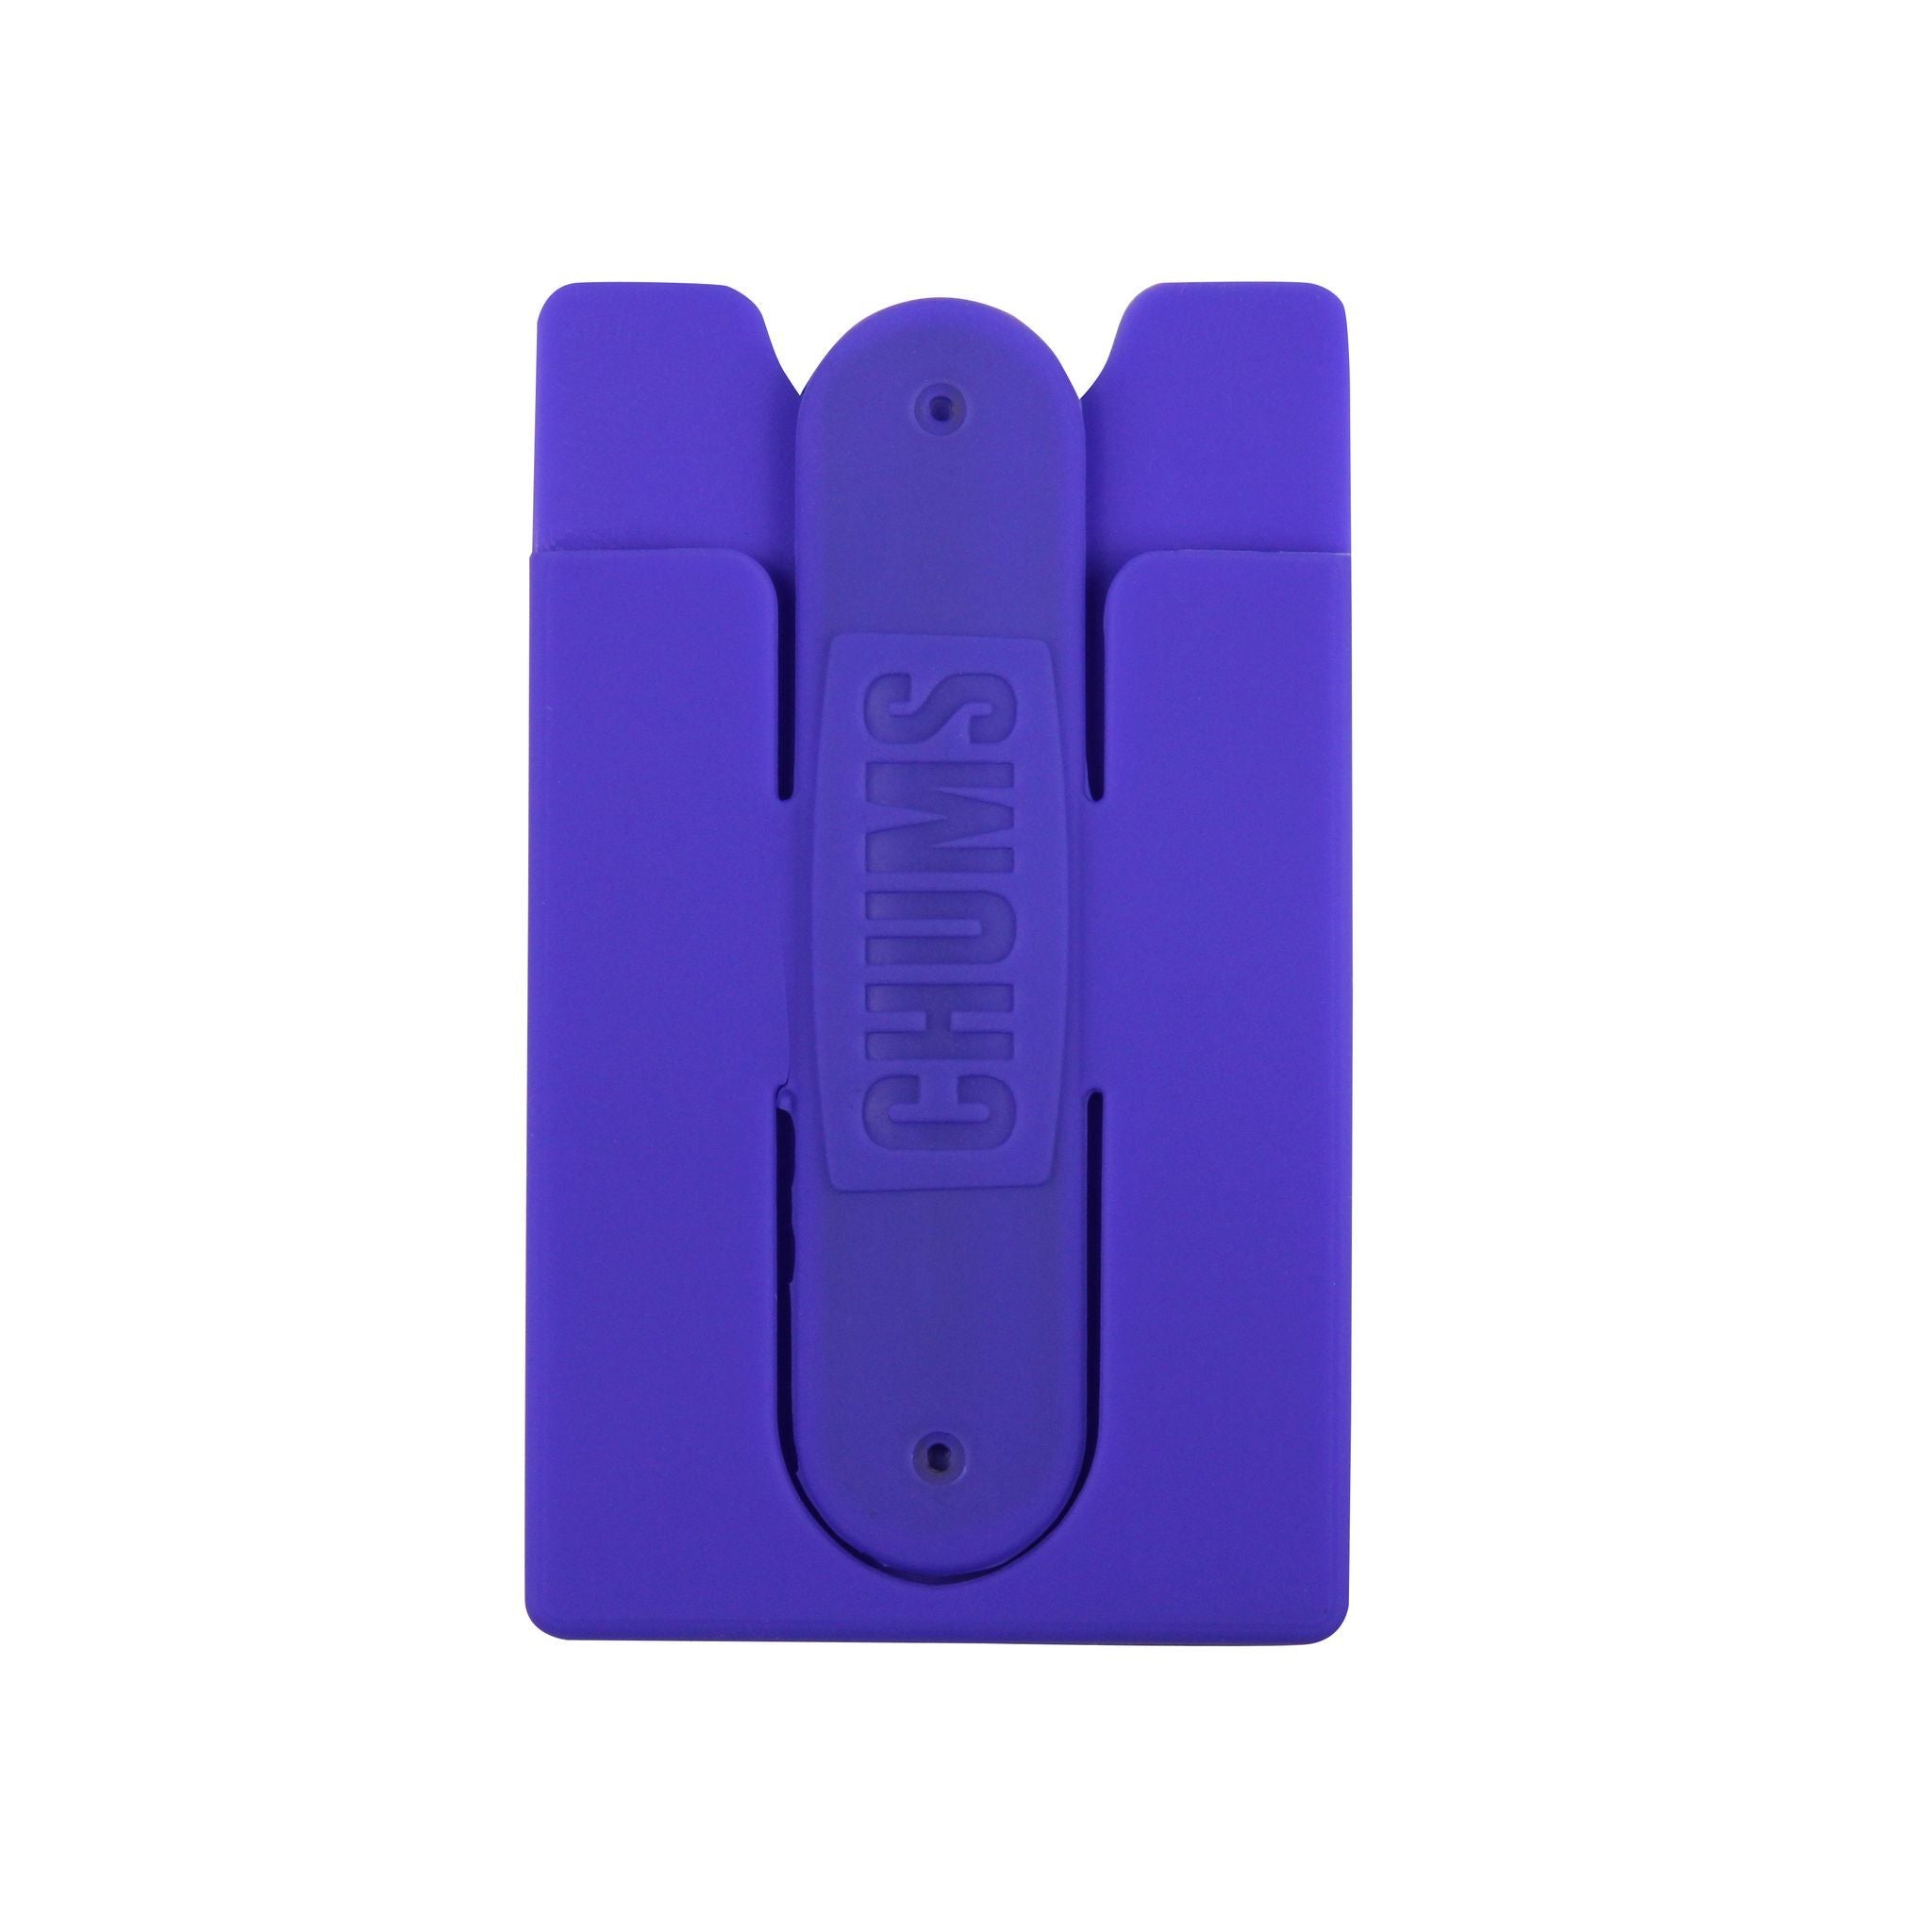 #18575109 back of phone wallet flipper purple